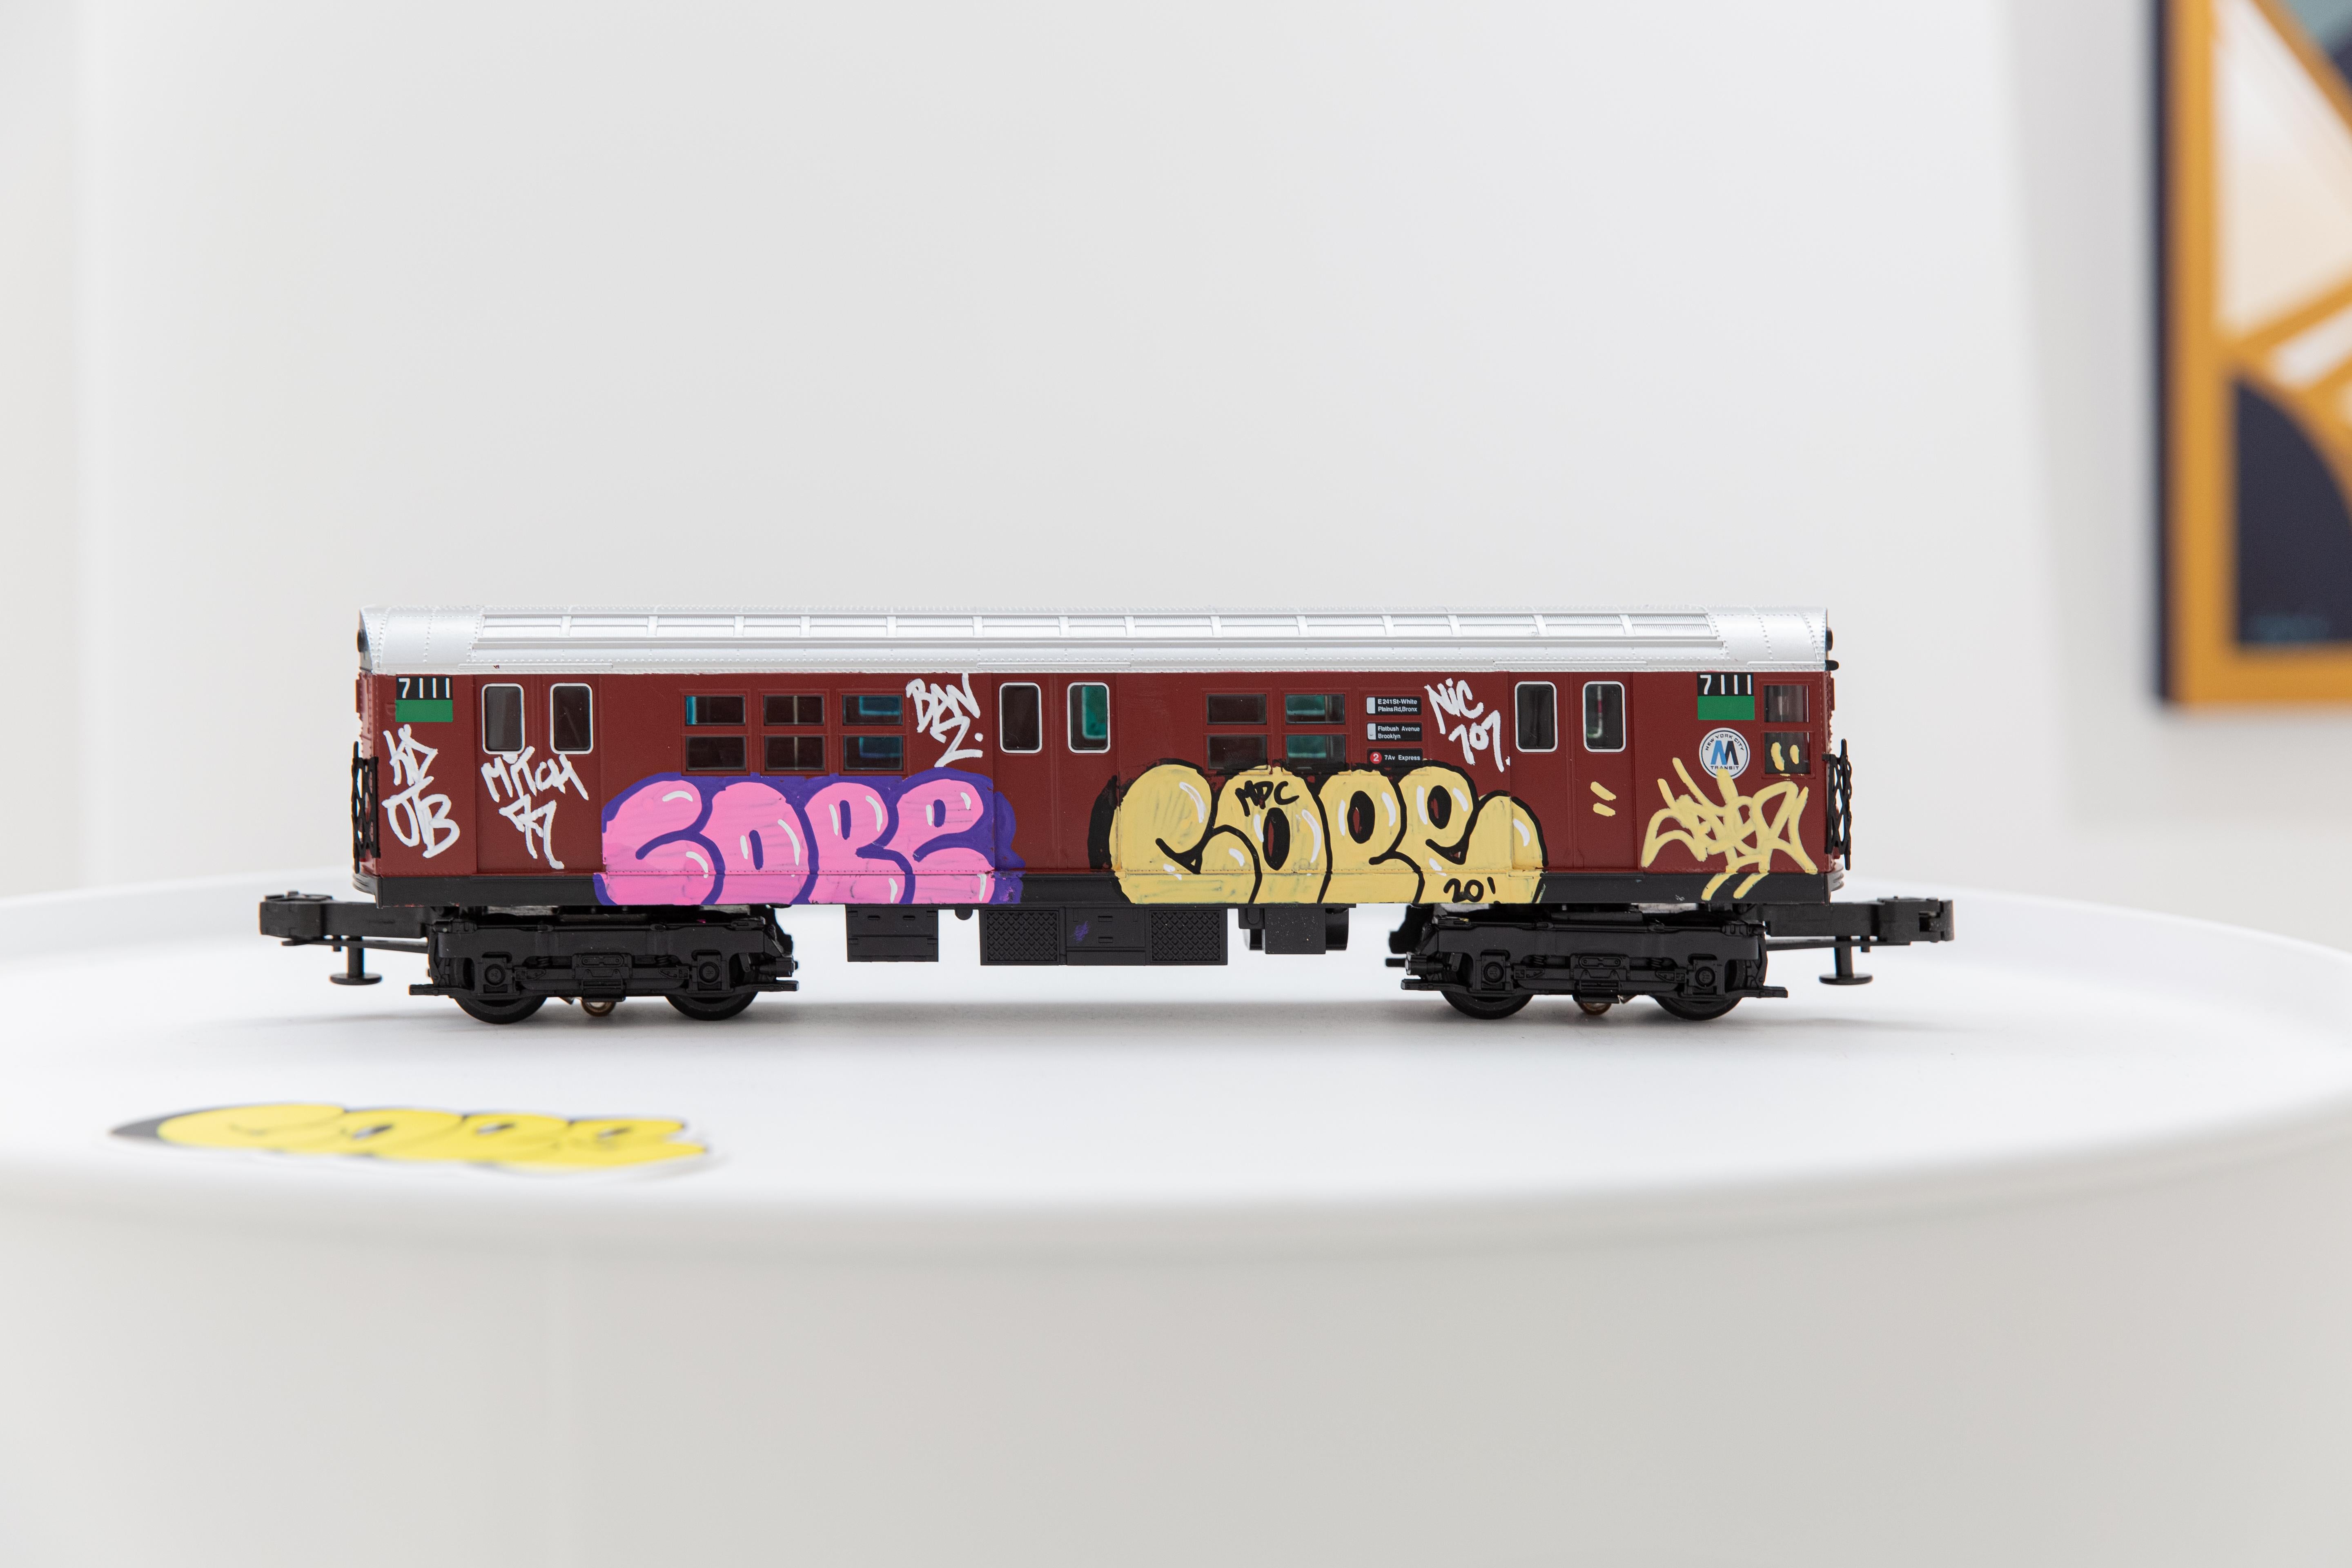 Cope2 est un artiste autodidacte qui est une légende célèbre contribuant depuis plus de 35 ans au graffiti et à l'art de l'art.  la culture de l'art de la rue. 
Aujourd'hui, vous pouvez voir Canpe 2 en studio en train de peindre, apportant son